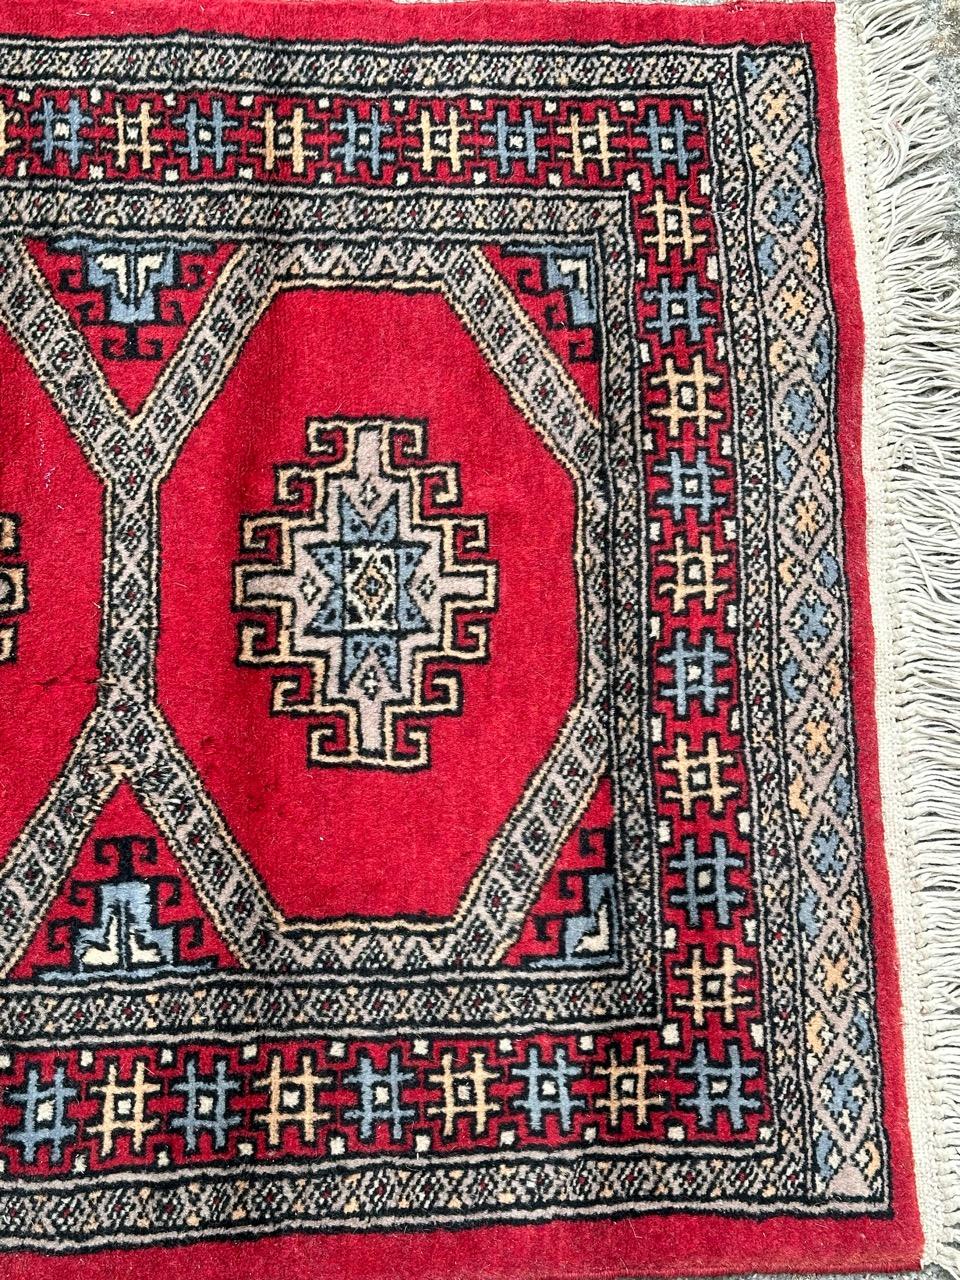 Joli petit tapis pakistanais vintage avec un joli design géométrique dans le style des tapis turkmènes, et de belles couleurs avec des champs rouges, bleus, gris, blancs et noirs, entièrement et finement noué à la main avec de la laine sur une base